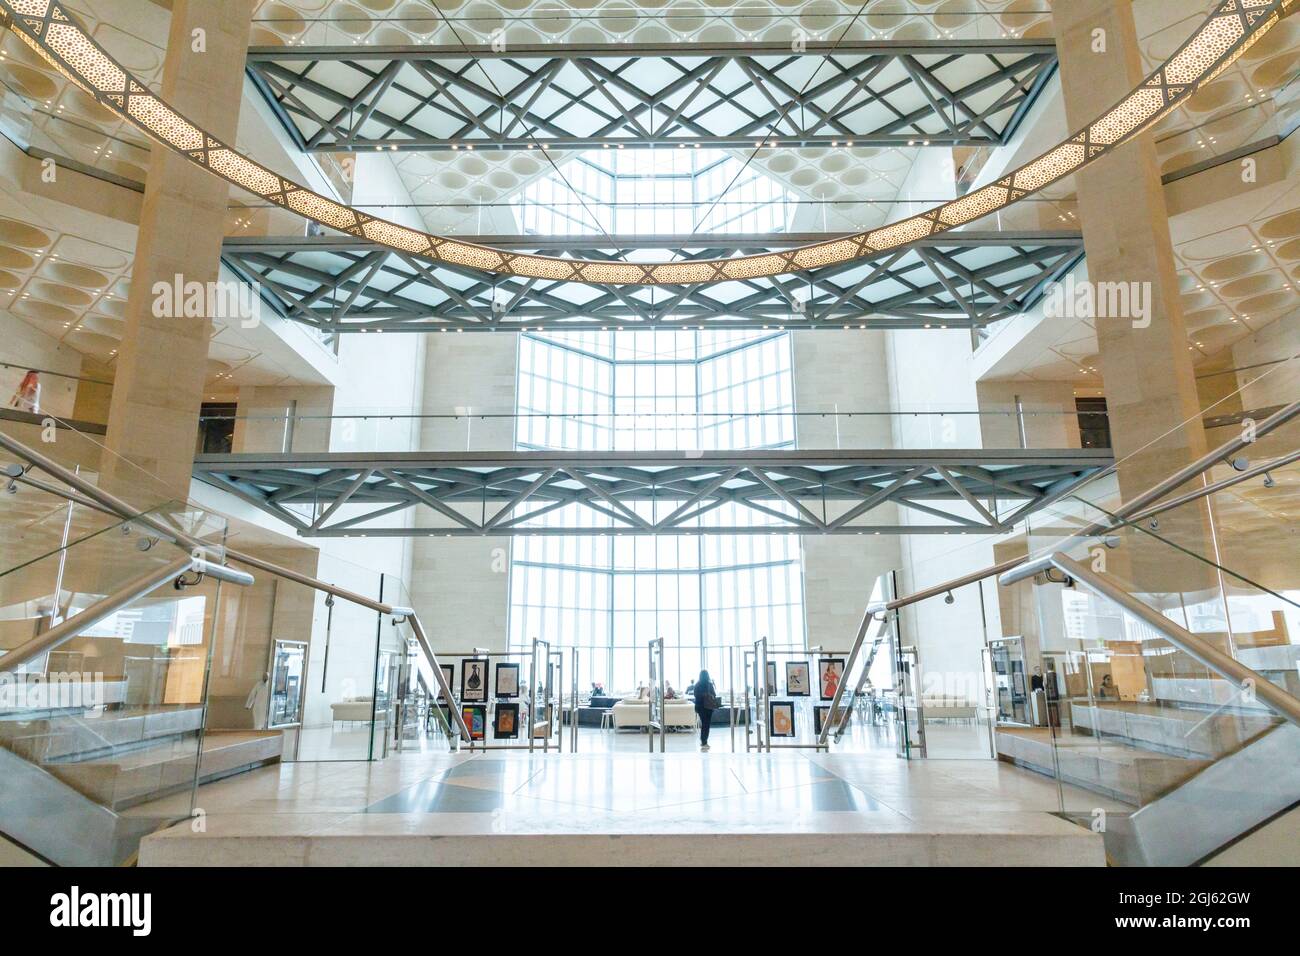 Stato del Qatar, Doha. Interno del Museo di Arte Islamica, costruito nel 2008. Scala a chiocciola principale. Finestre da pavimento a soffitto. (Solo per uso editoriale) Foto Stock